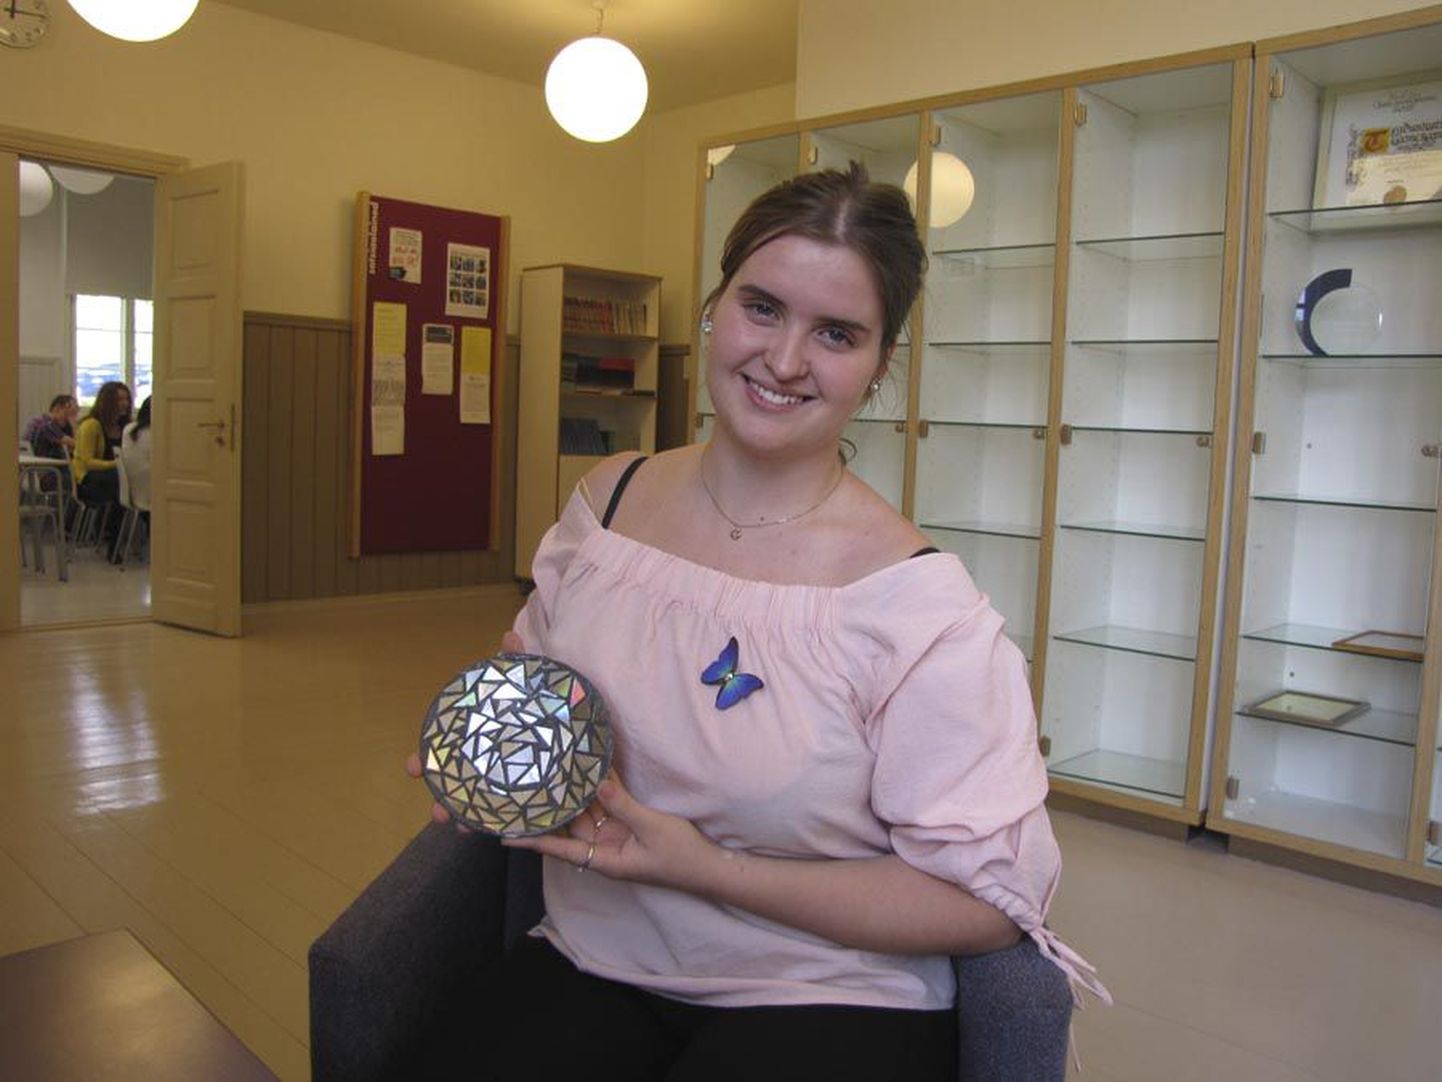 Õpilasfirma Säud valmistab mosaiiktehnikas ilunõusid ja vajab selleks palju laserplaate. Pildil on firma tegevjuht ja tootja Liisa-Maria Sülla esimese katsetusega.